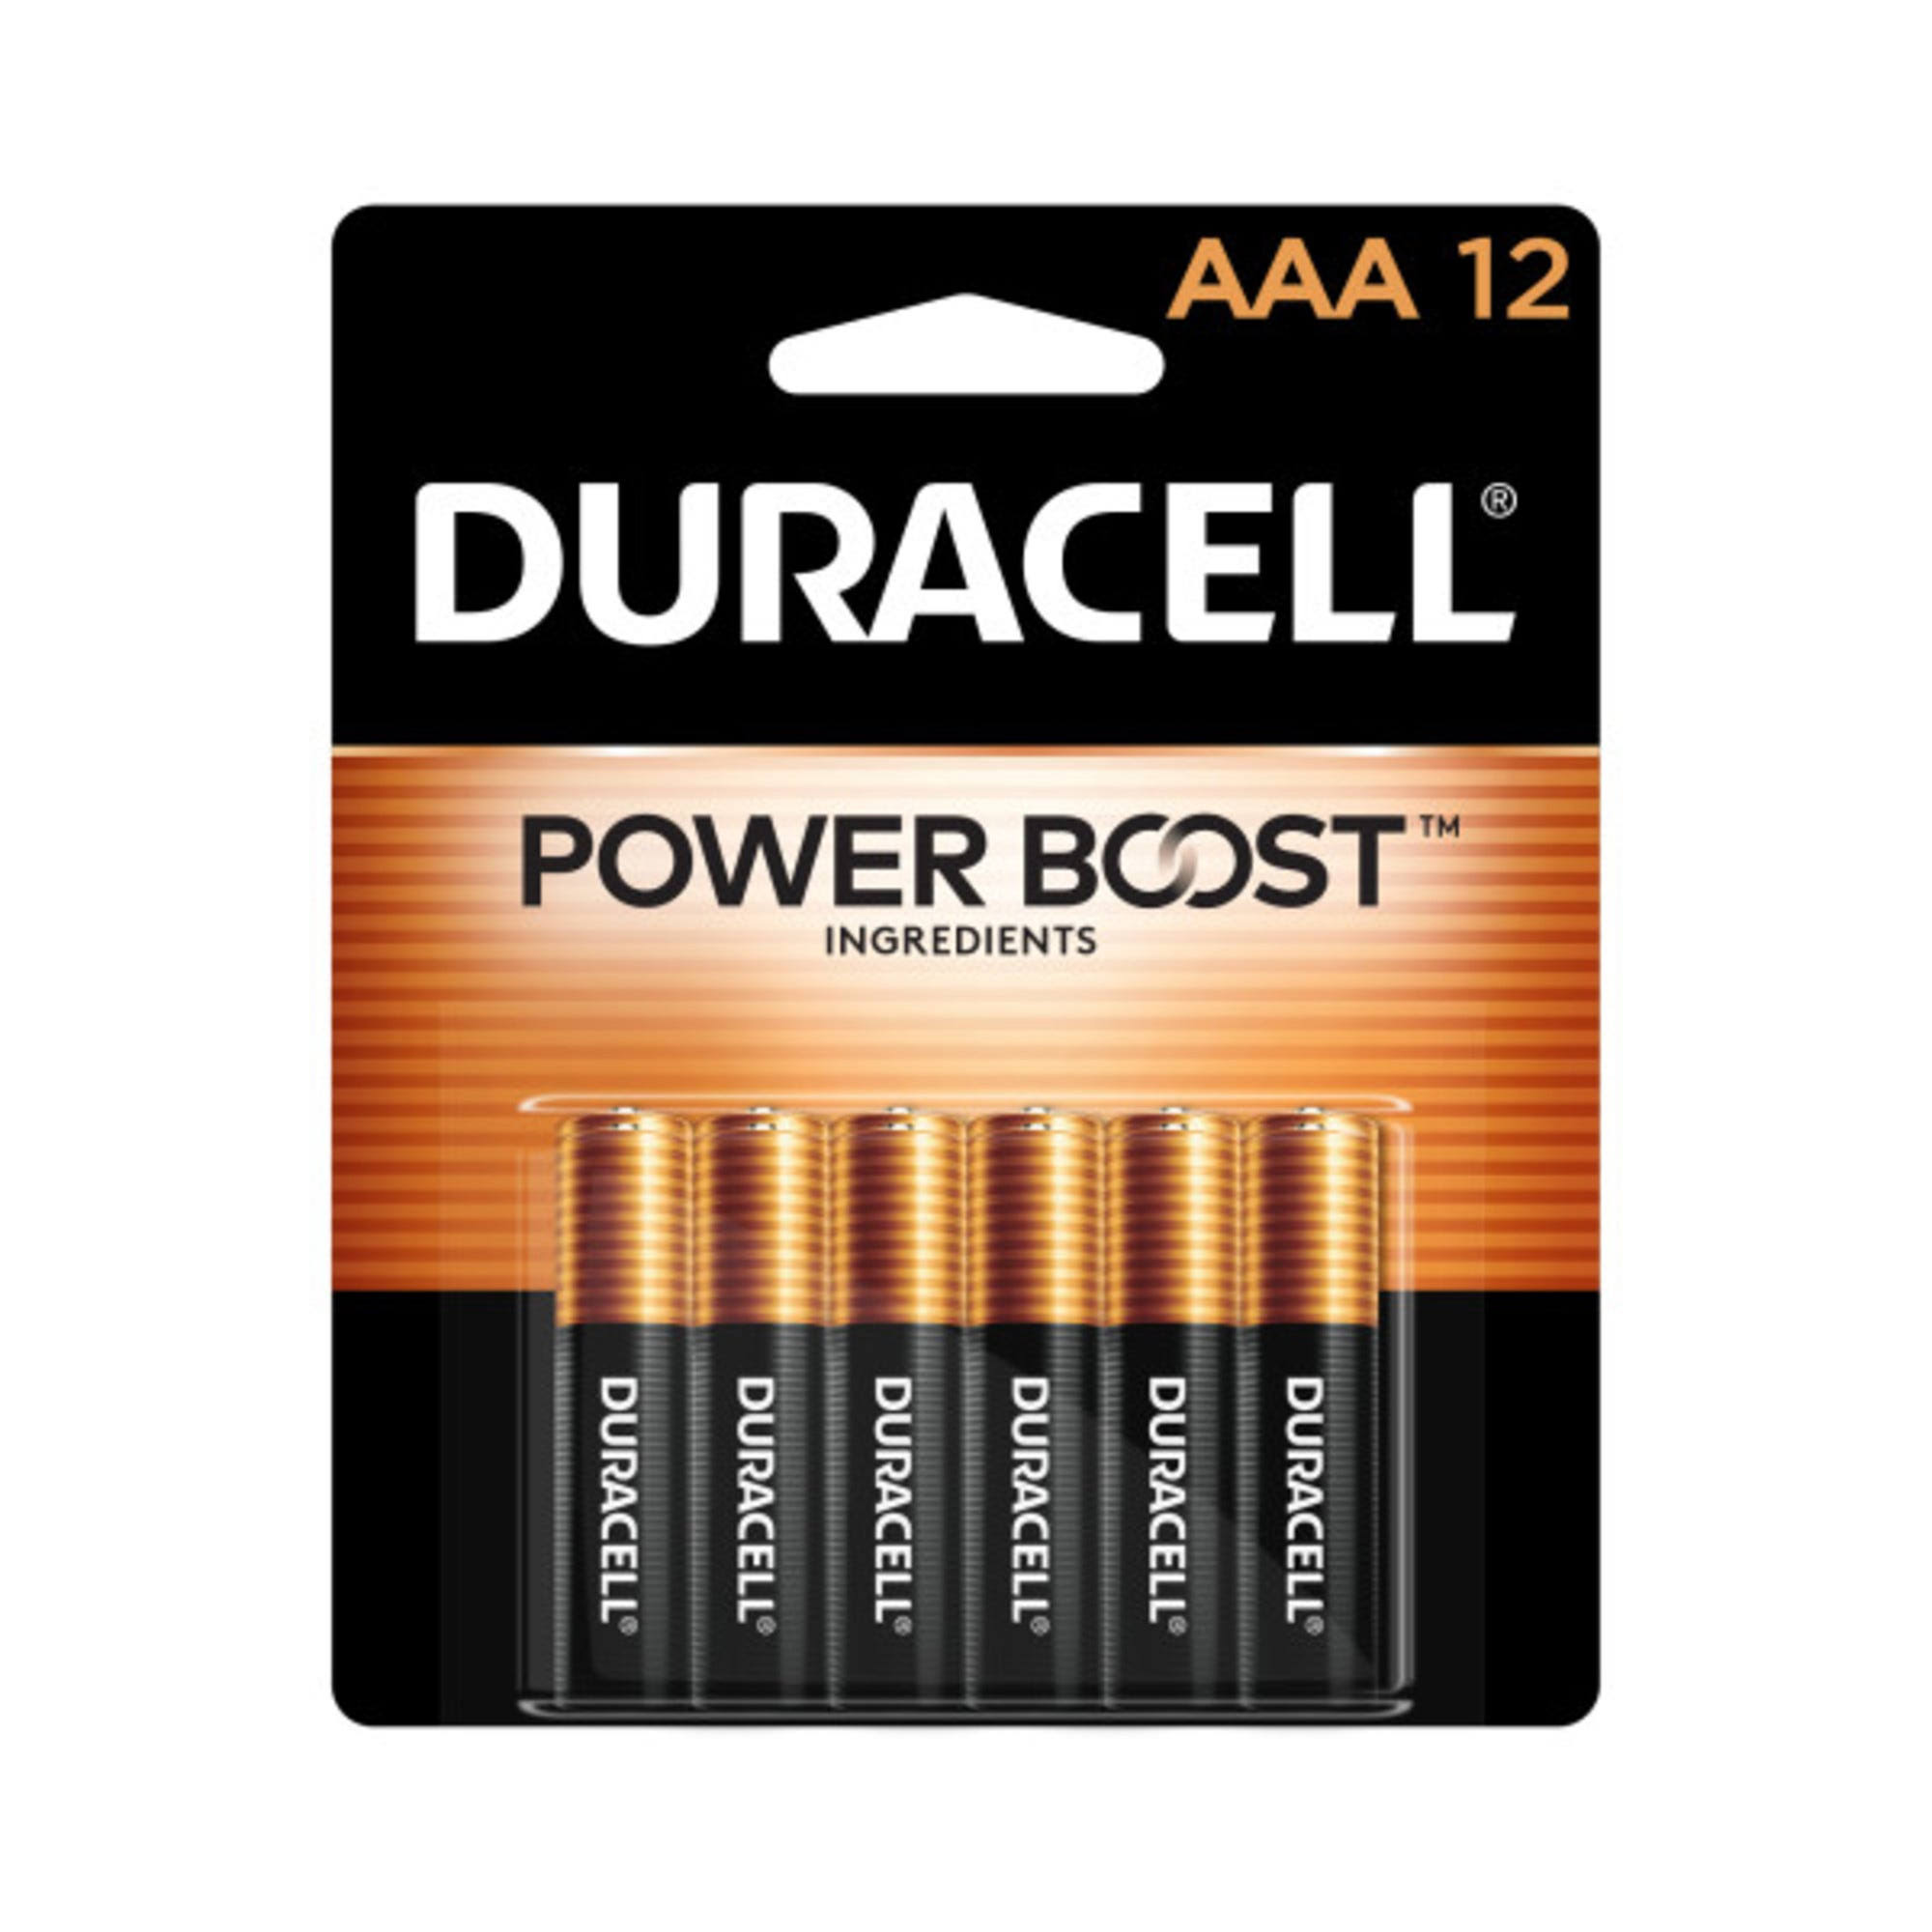 Duracell Power Boost Batteries, Alkaline, AAA, 1.5 V - 12 batteries